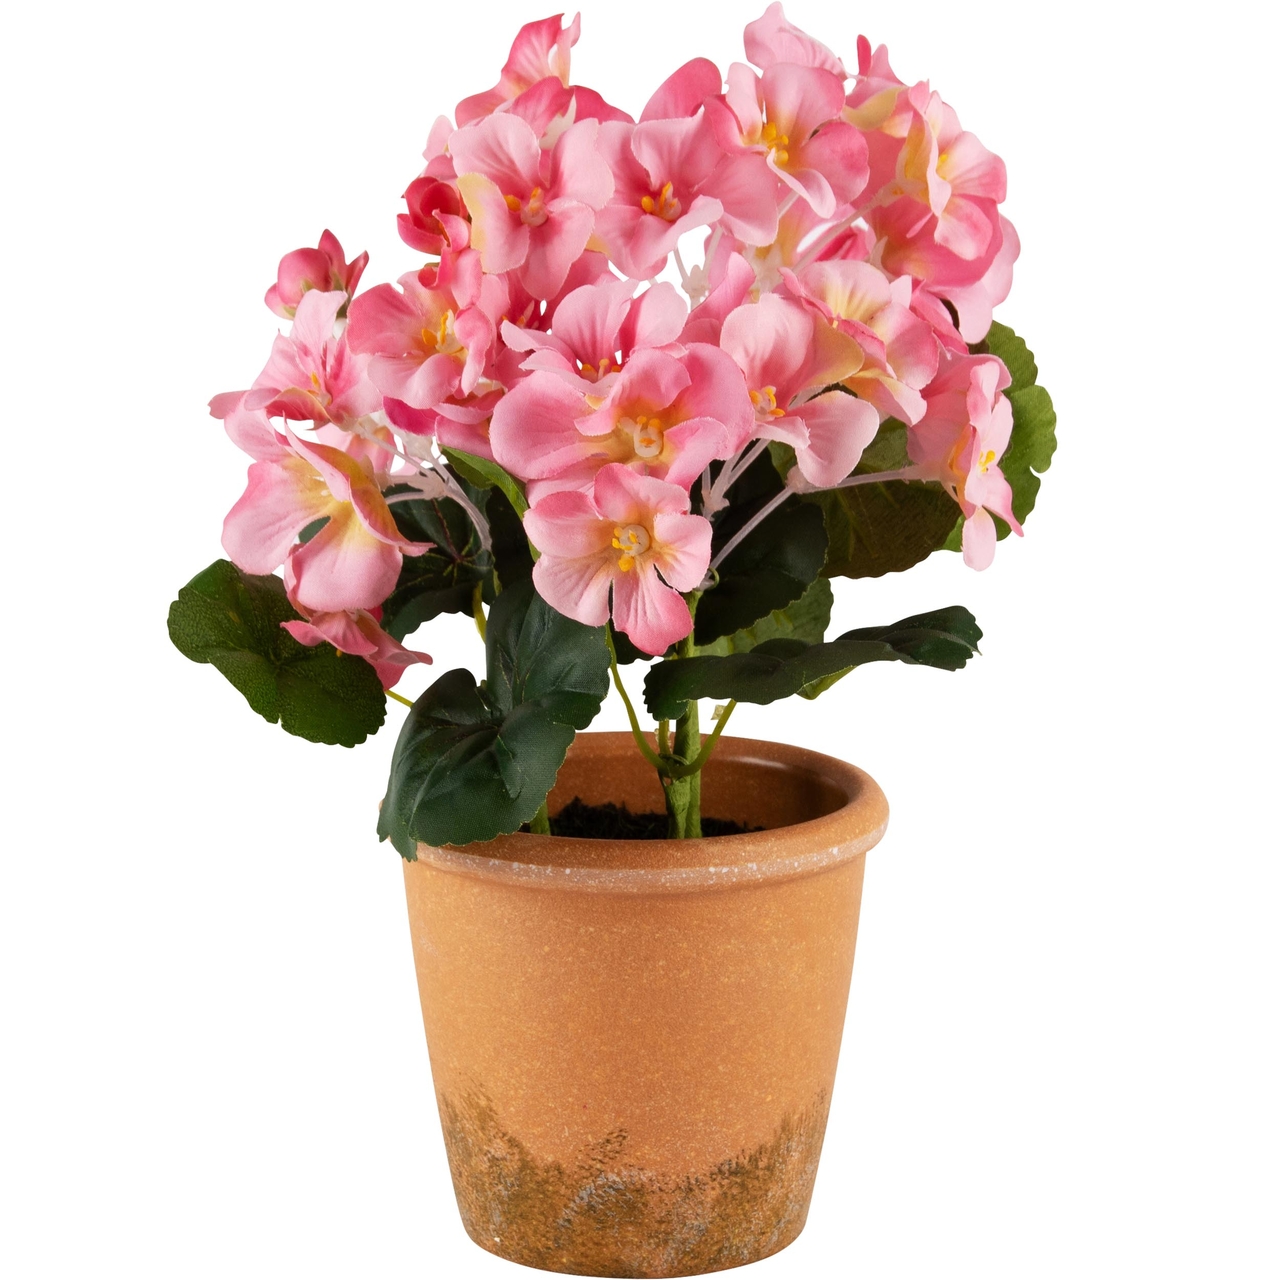 Dekoratief | Bloempot m/roze bloemen, PVC, 15x15x23cm | A240580